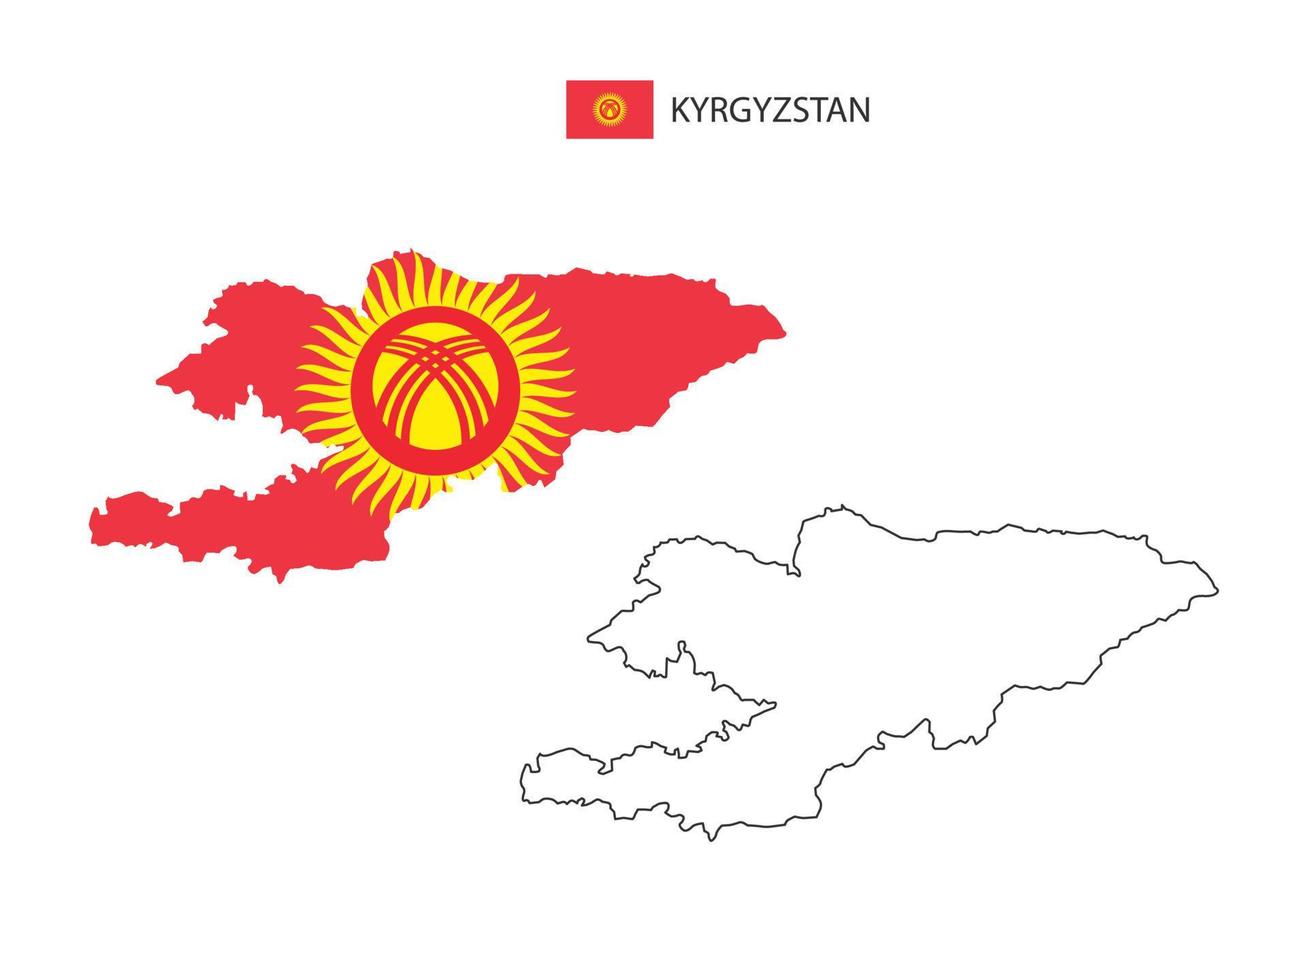 vetor da cidade do mapa do Quirguistão dividido pelo estilo de simplicidade do contorno. tem 2 versões, versão de linha fina preta e cor da versão da bandeira do país. ambos os mapas estavam no fundo branco.